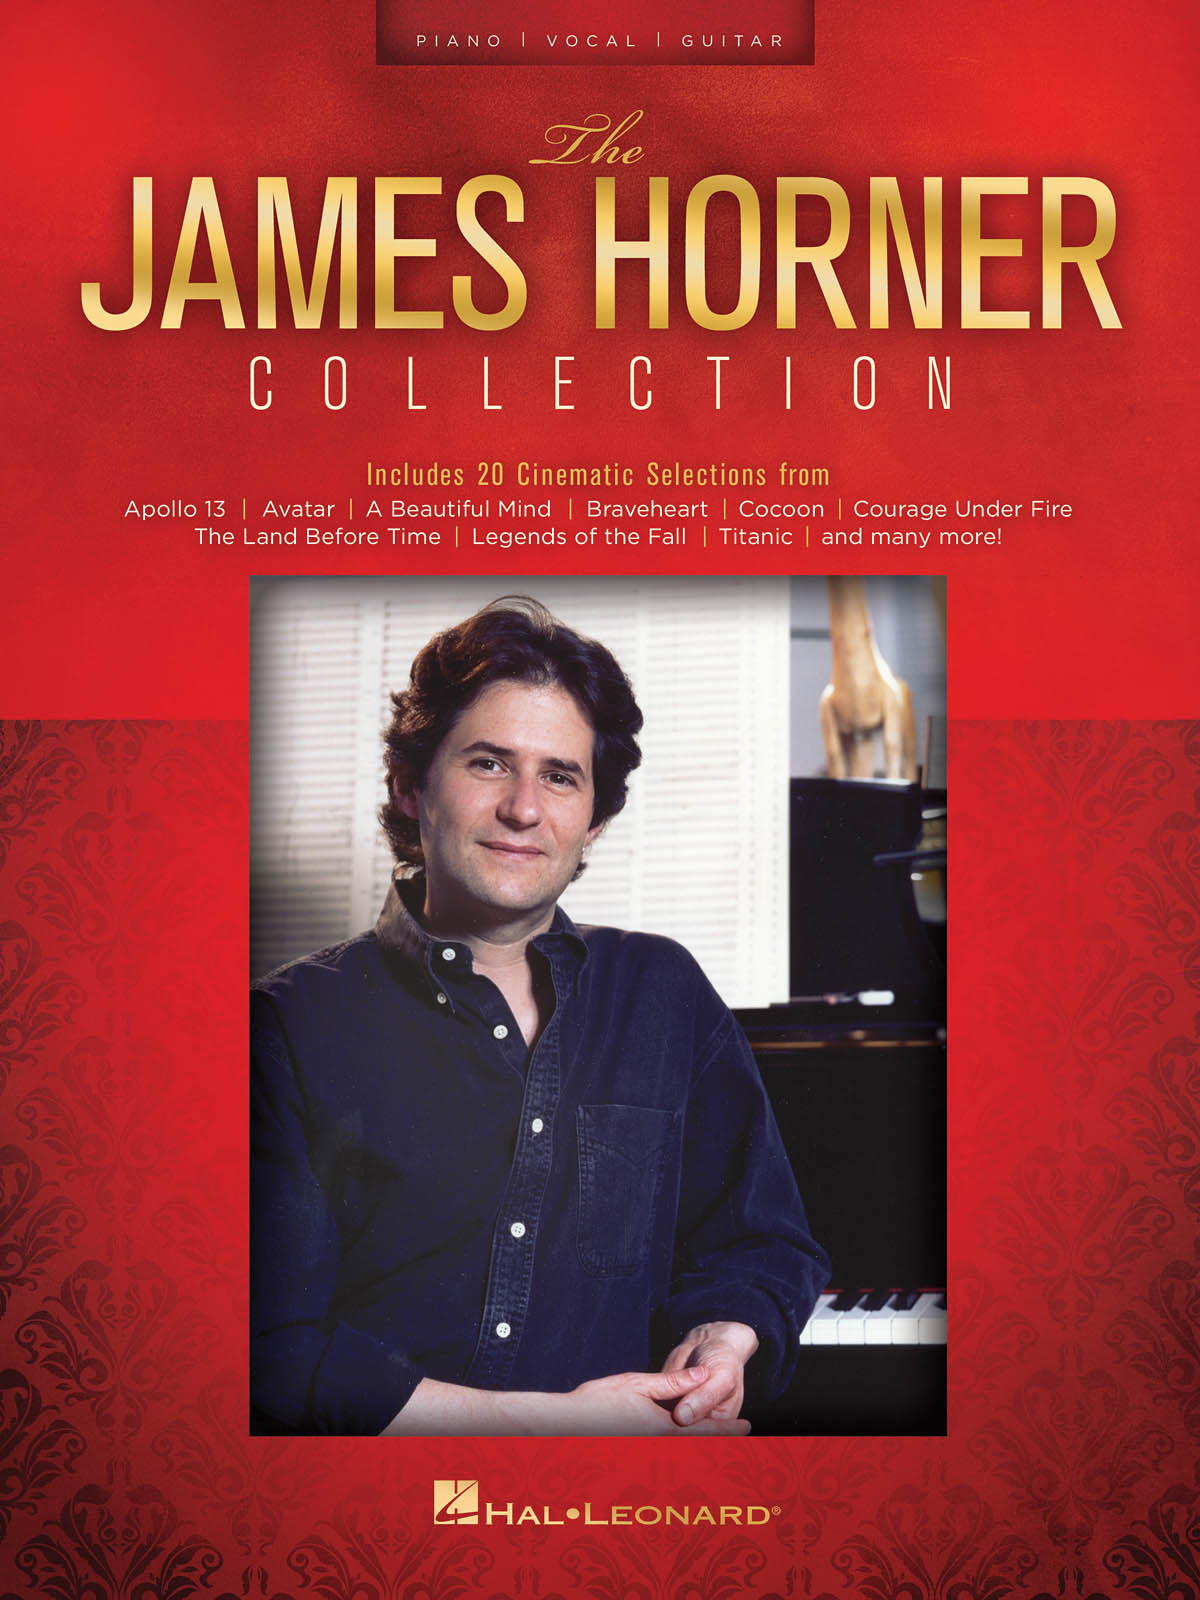 The James Horner Collection - Includes 20 Cinematic Selections - písně pro zpěv, klavír s akordy pro kytaru